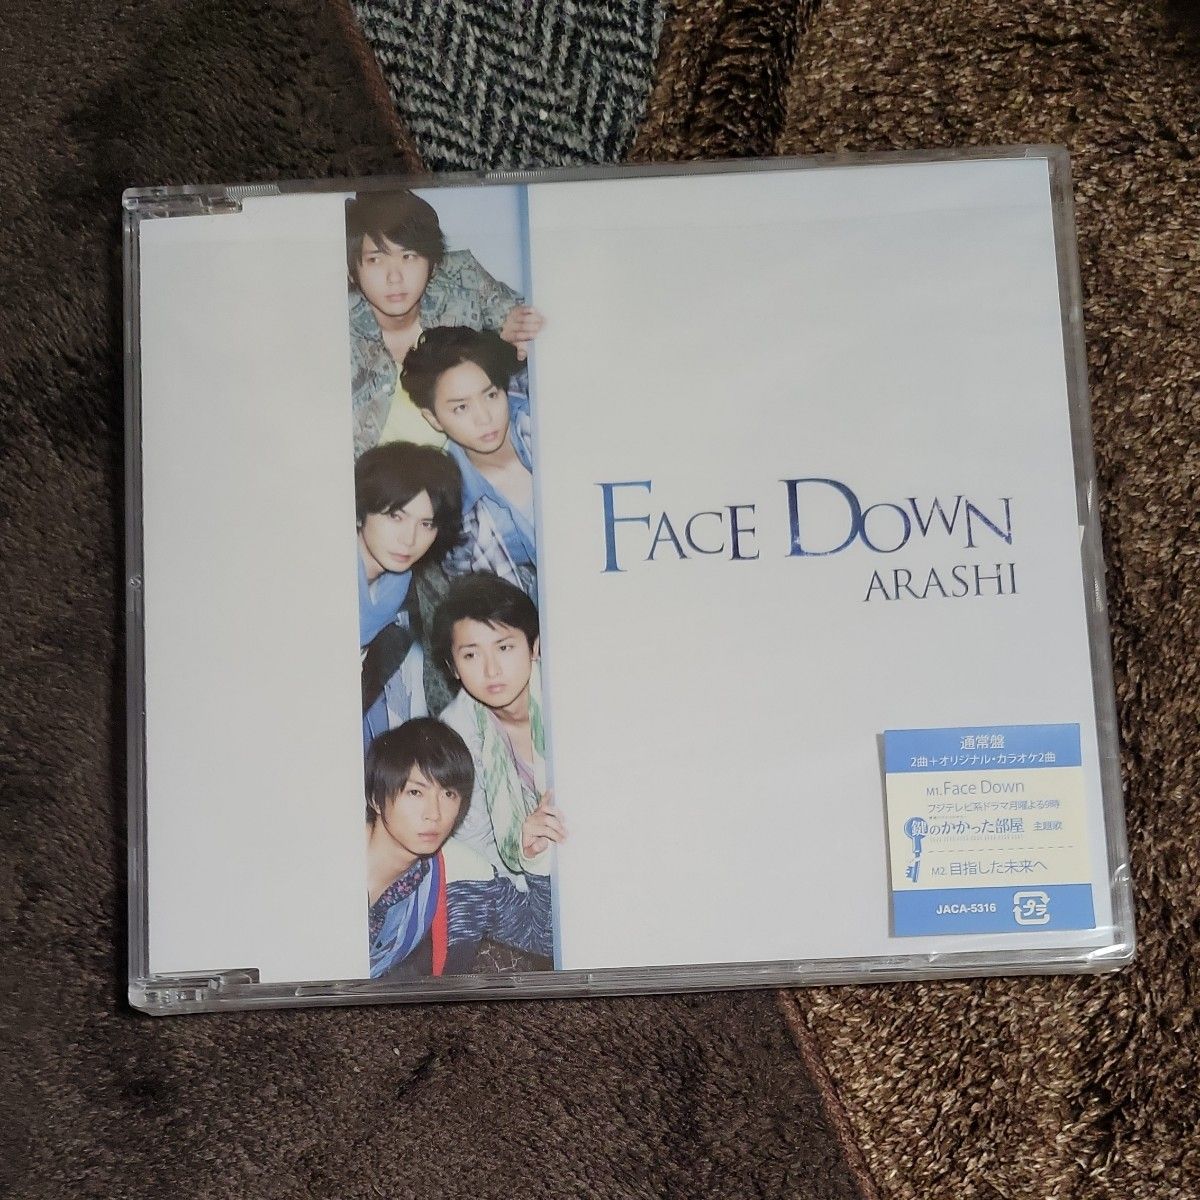 嵐 CD/Face Down 12/5/9発売 (ギフト不可) オリコン加盟店 通常盤 シングル